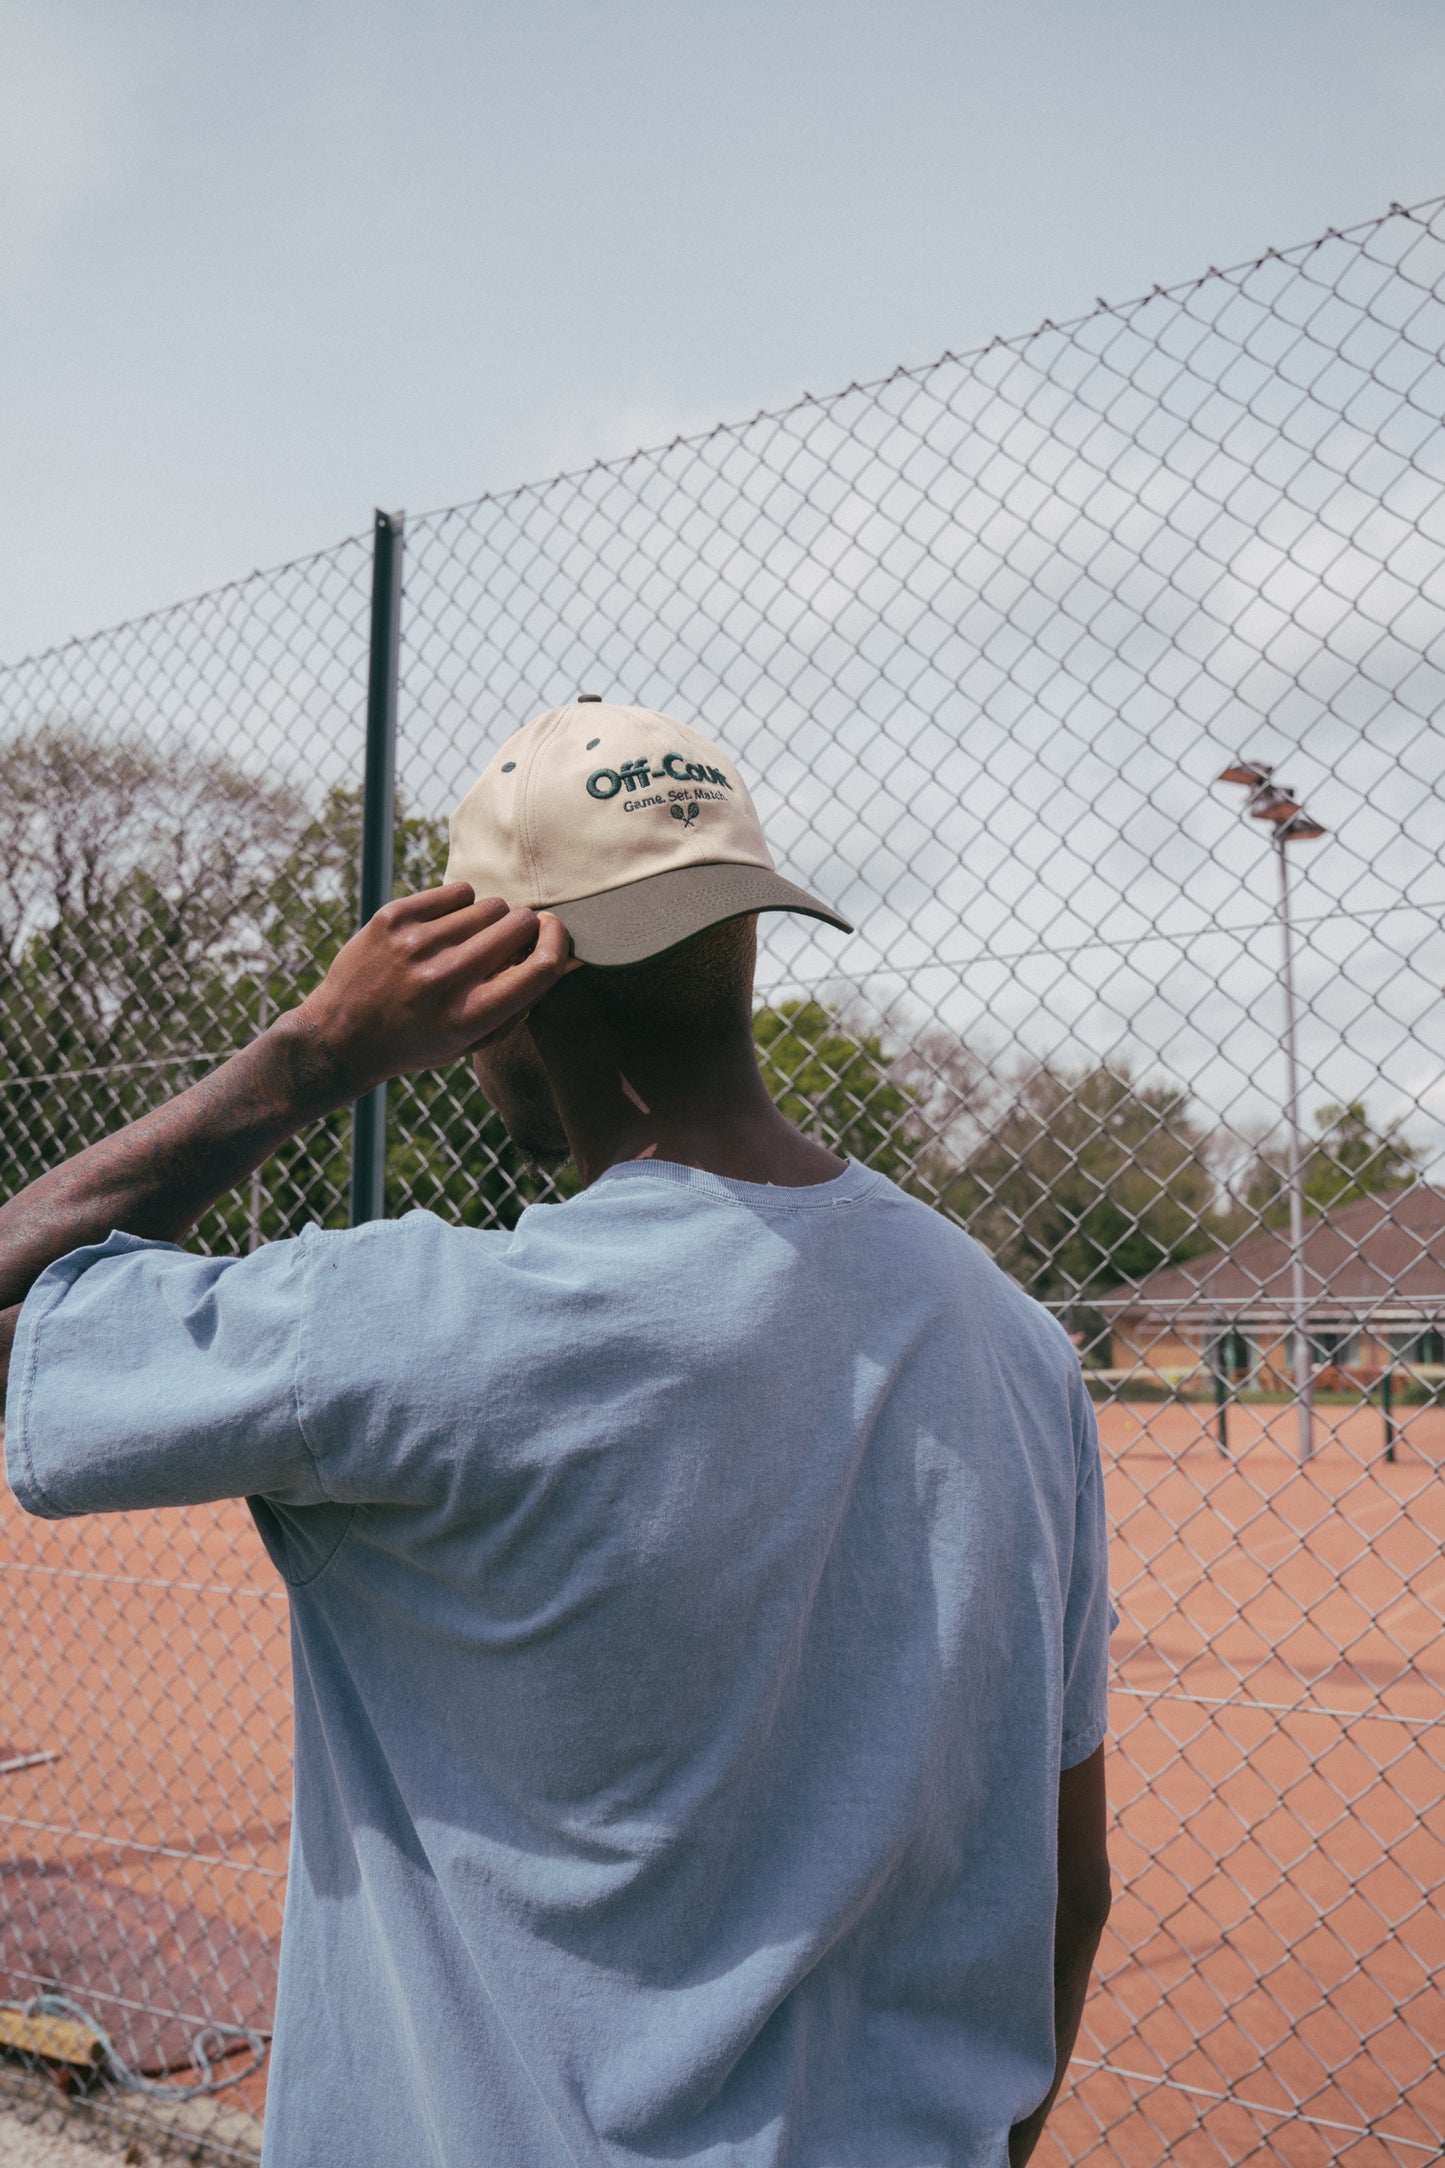 Vice 84 'Off Court' Tennis Cap